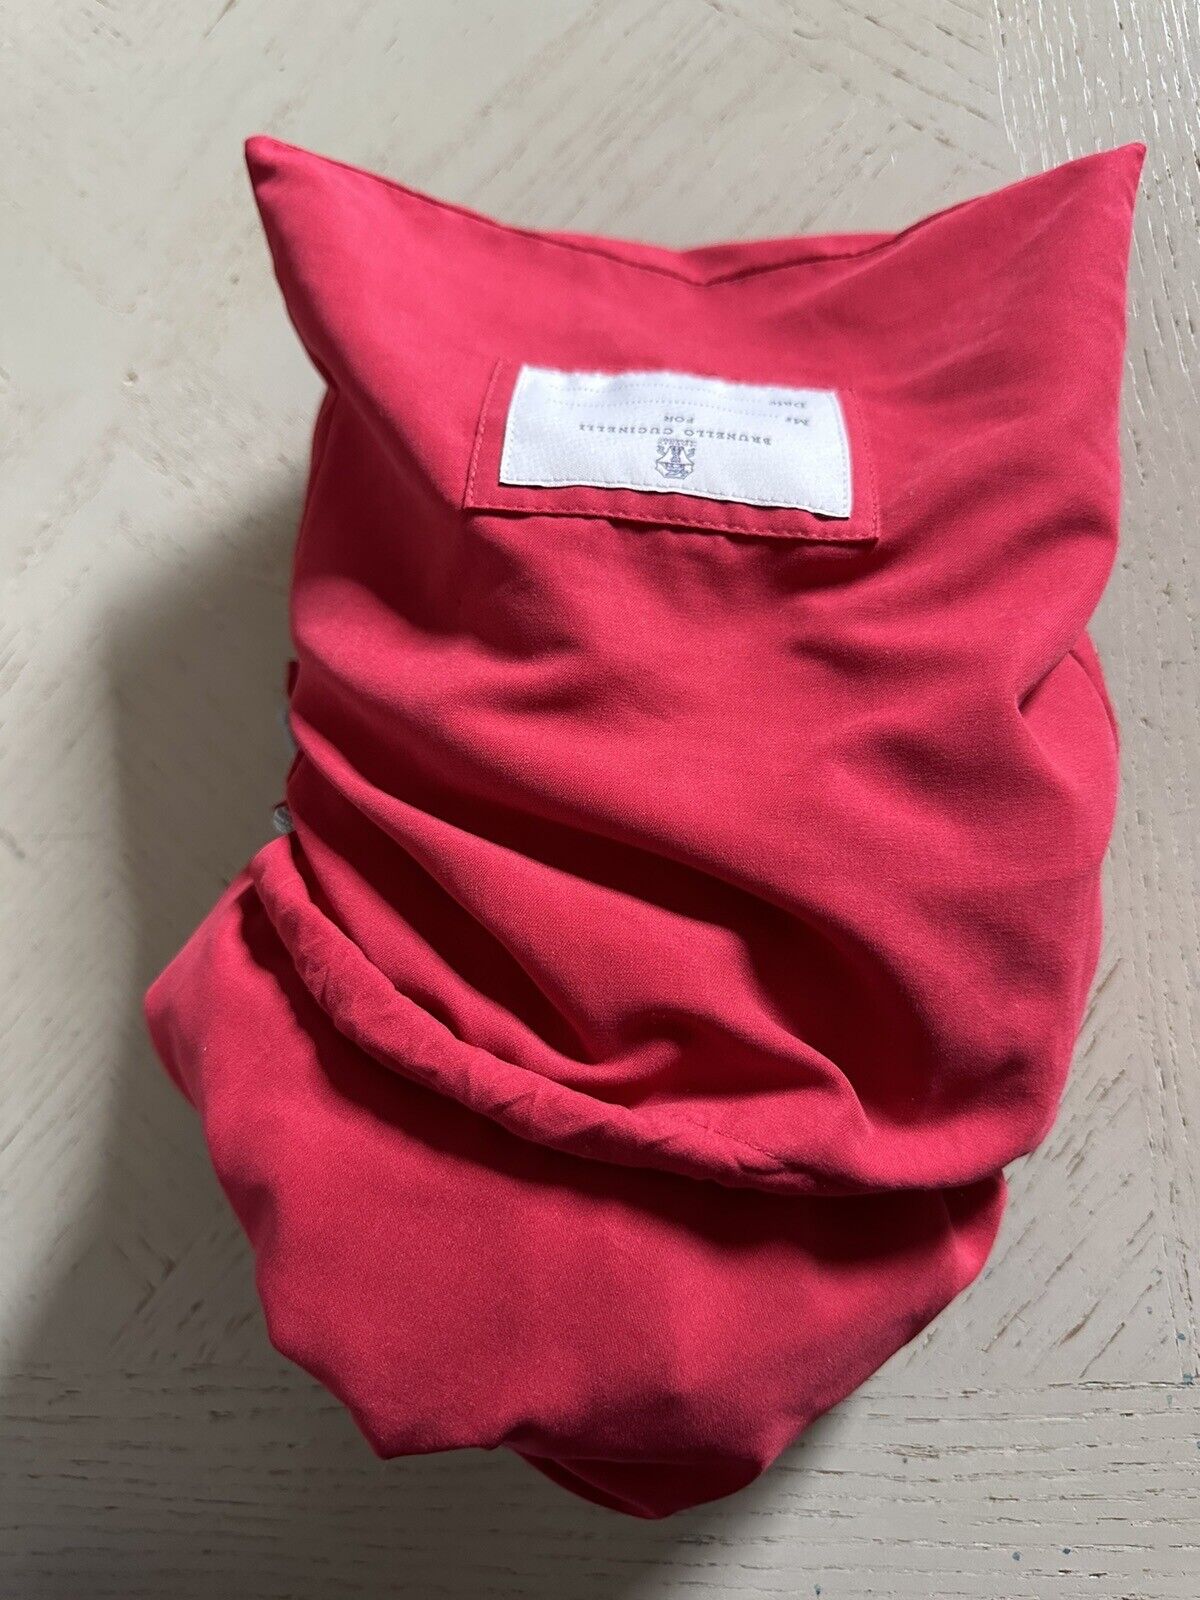 NWT $550 Brunello Cucinelli Мужчины Купальники Короткие Цвета Красный L Италия